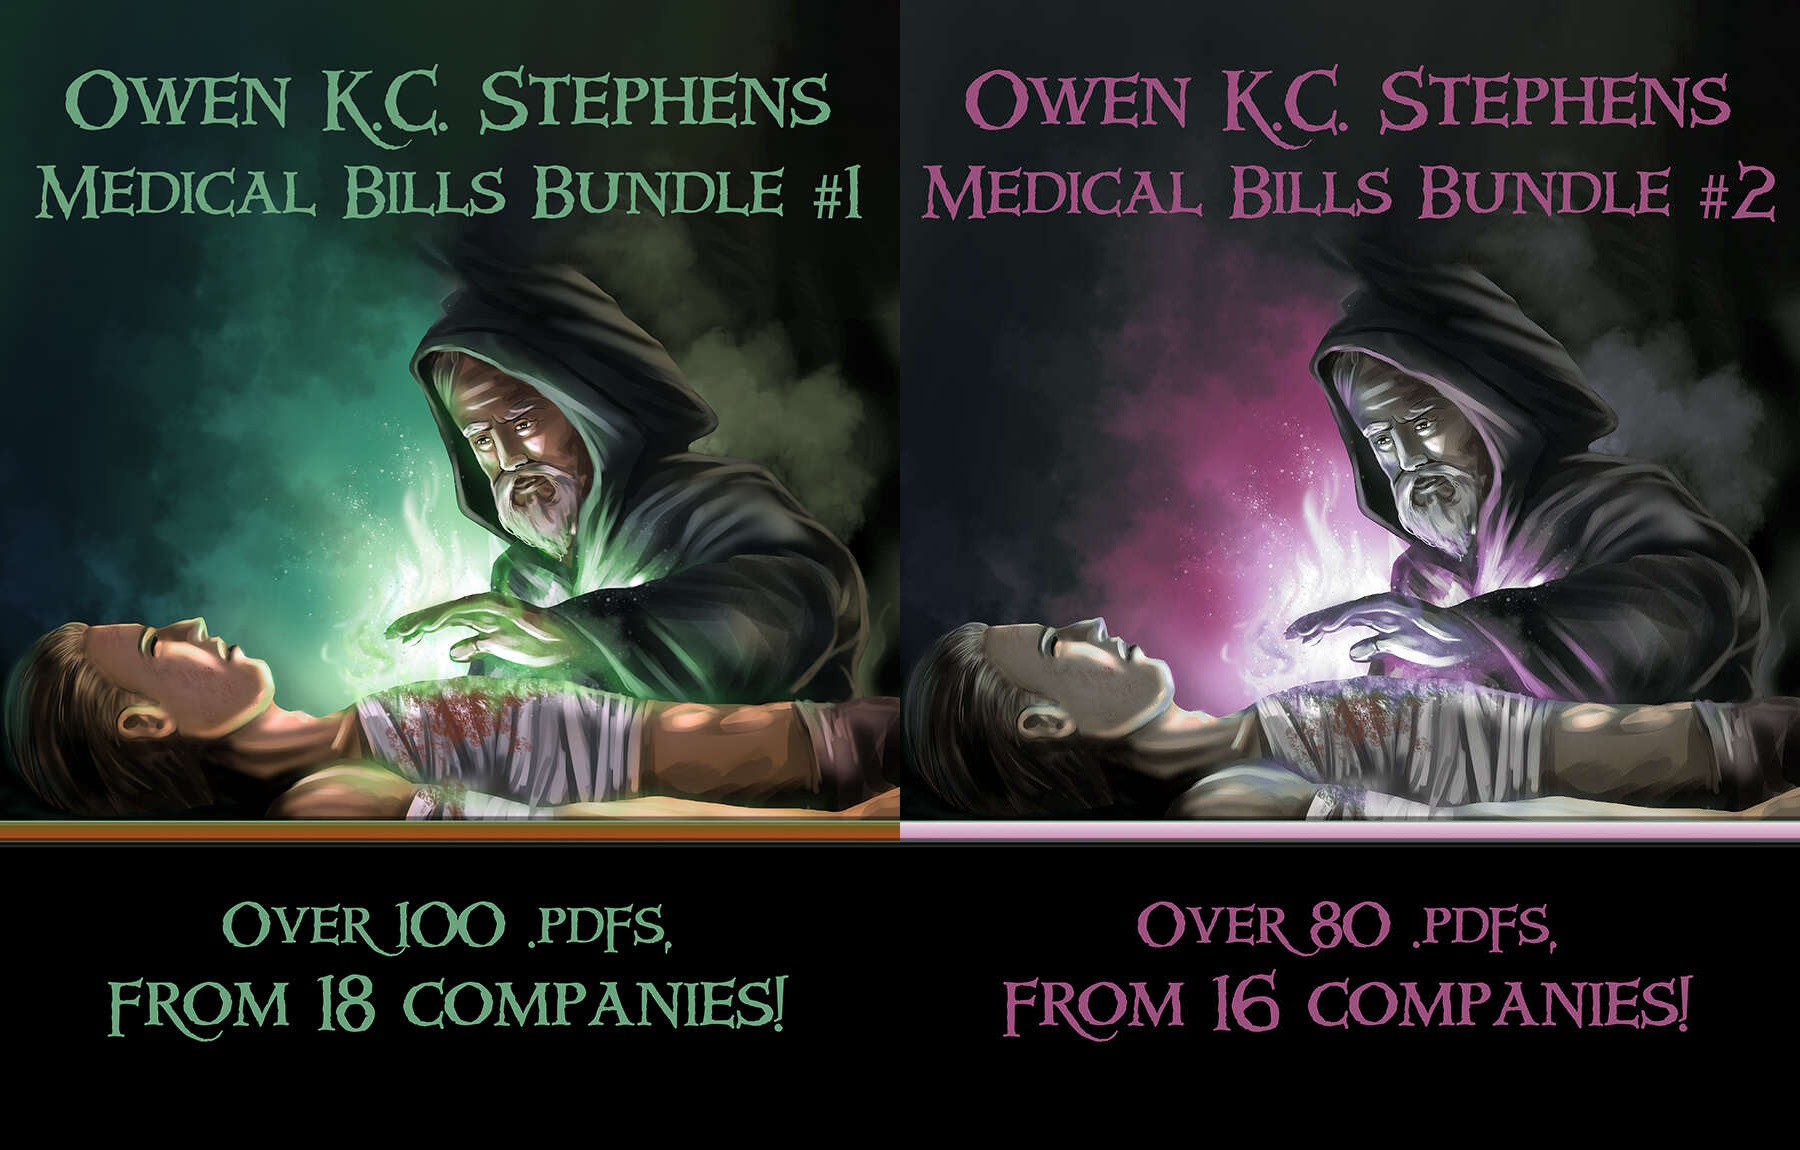 own kc stephens medical bills bundles together.jpg